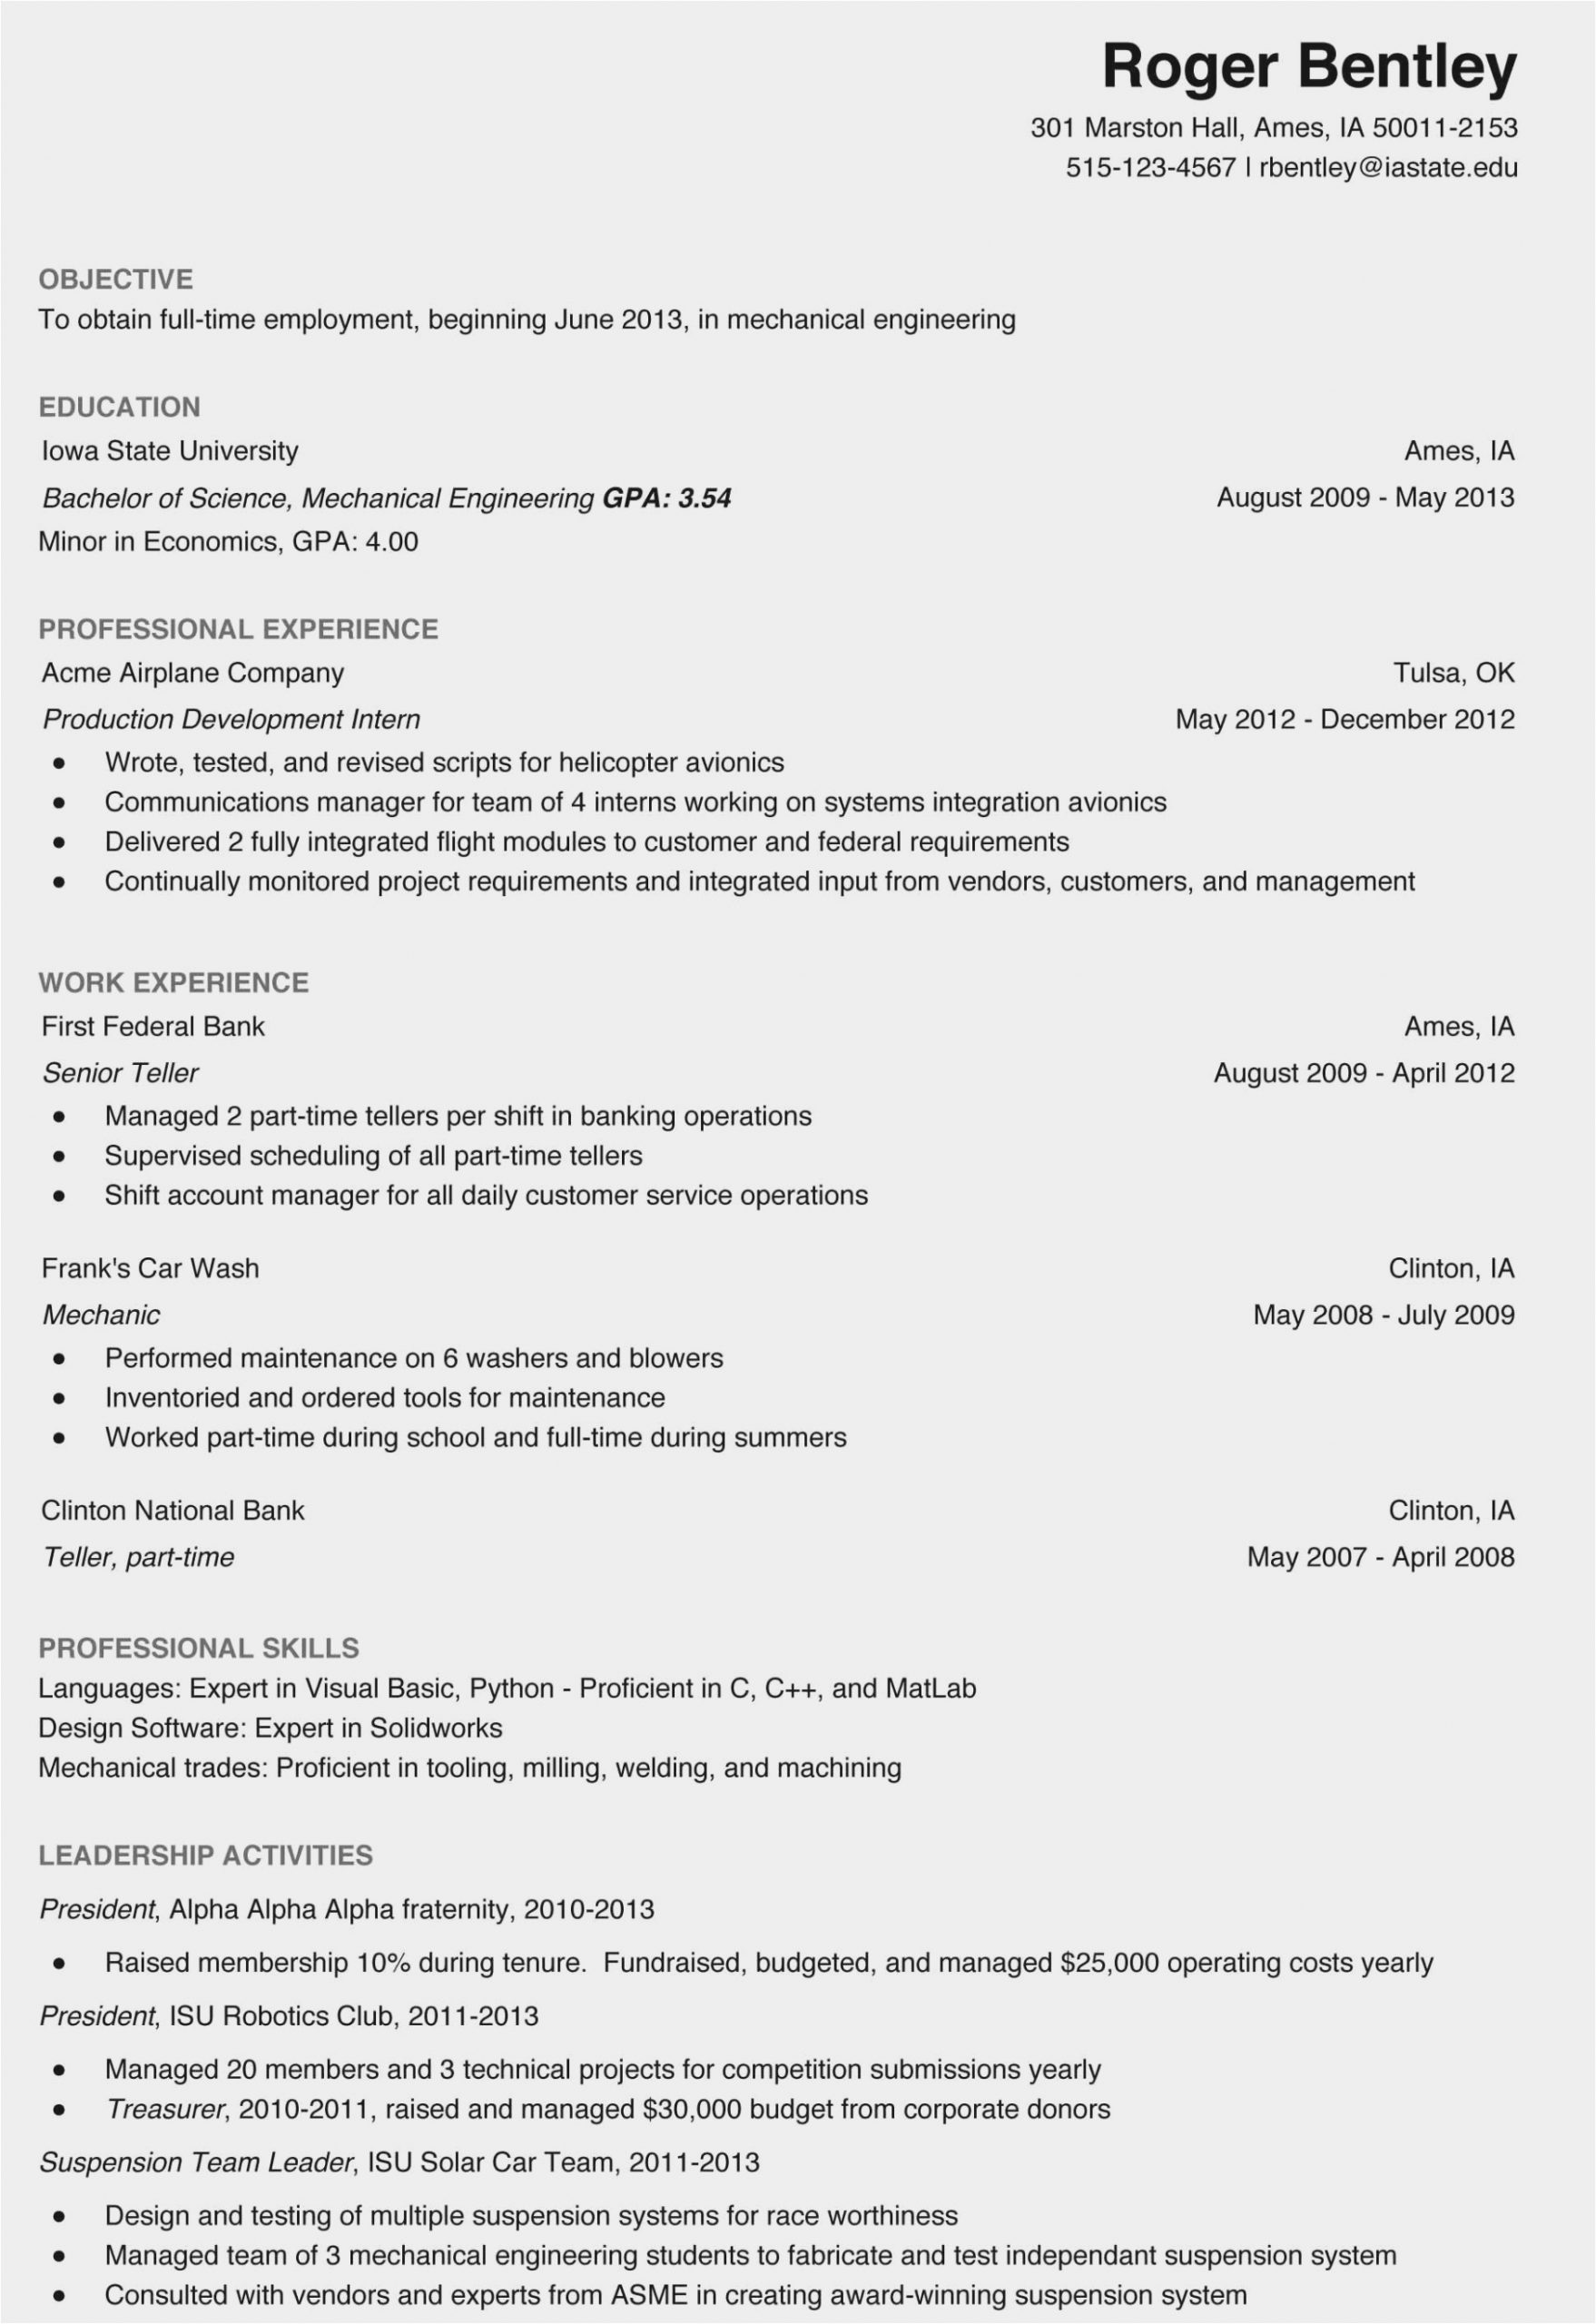 Sample Resume for Internship In Civil Engineering 11 12 Sample Resume for Civil Engineer Internship